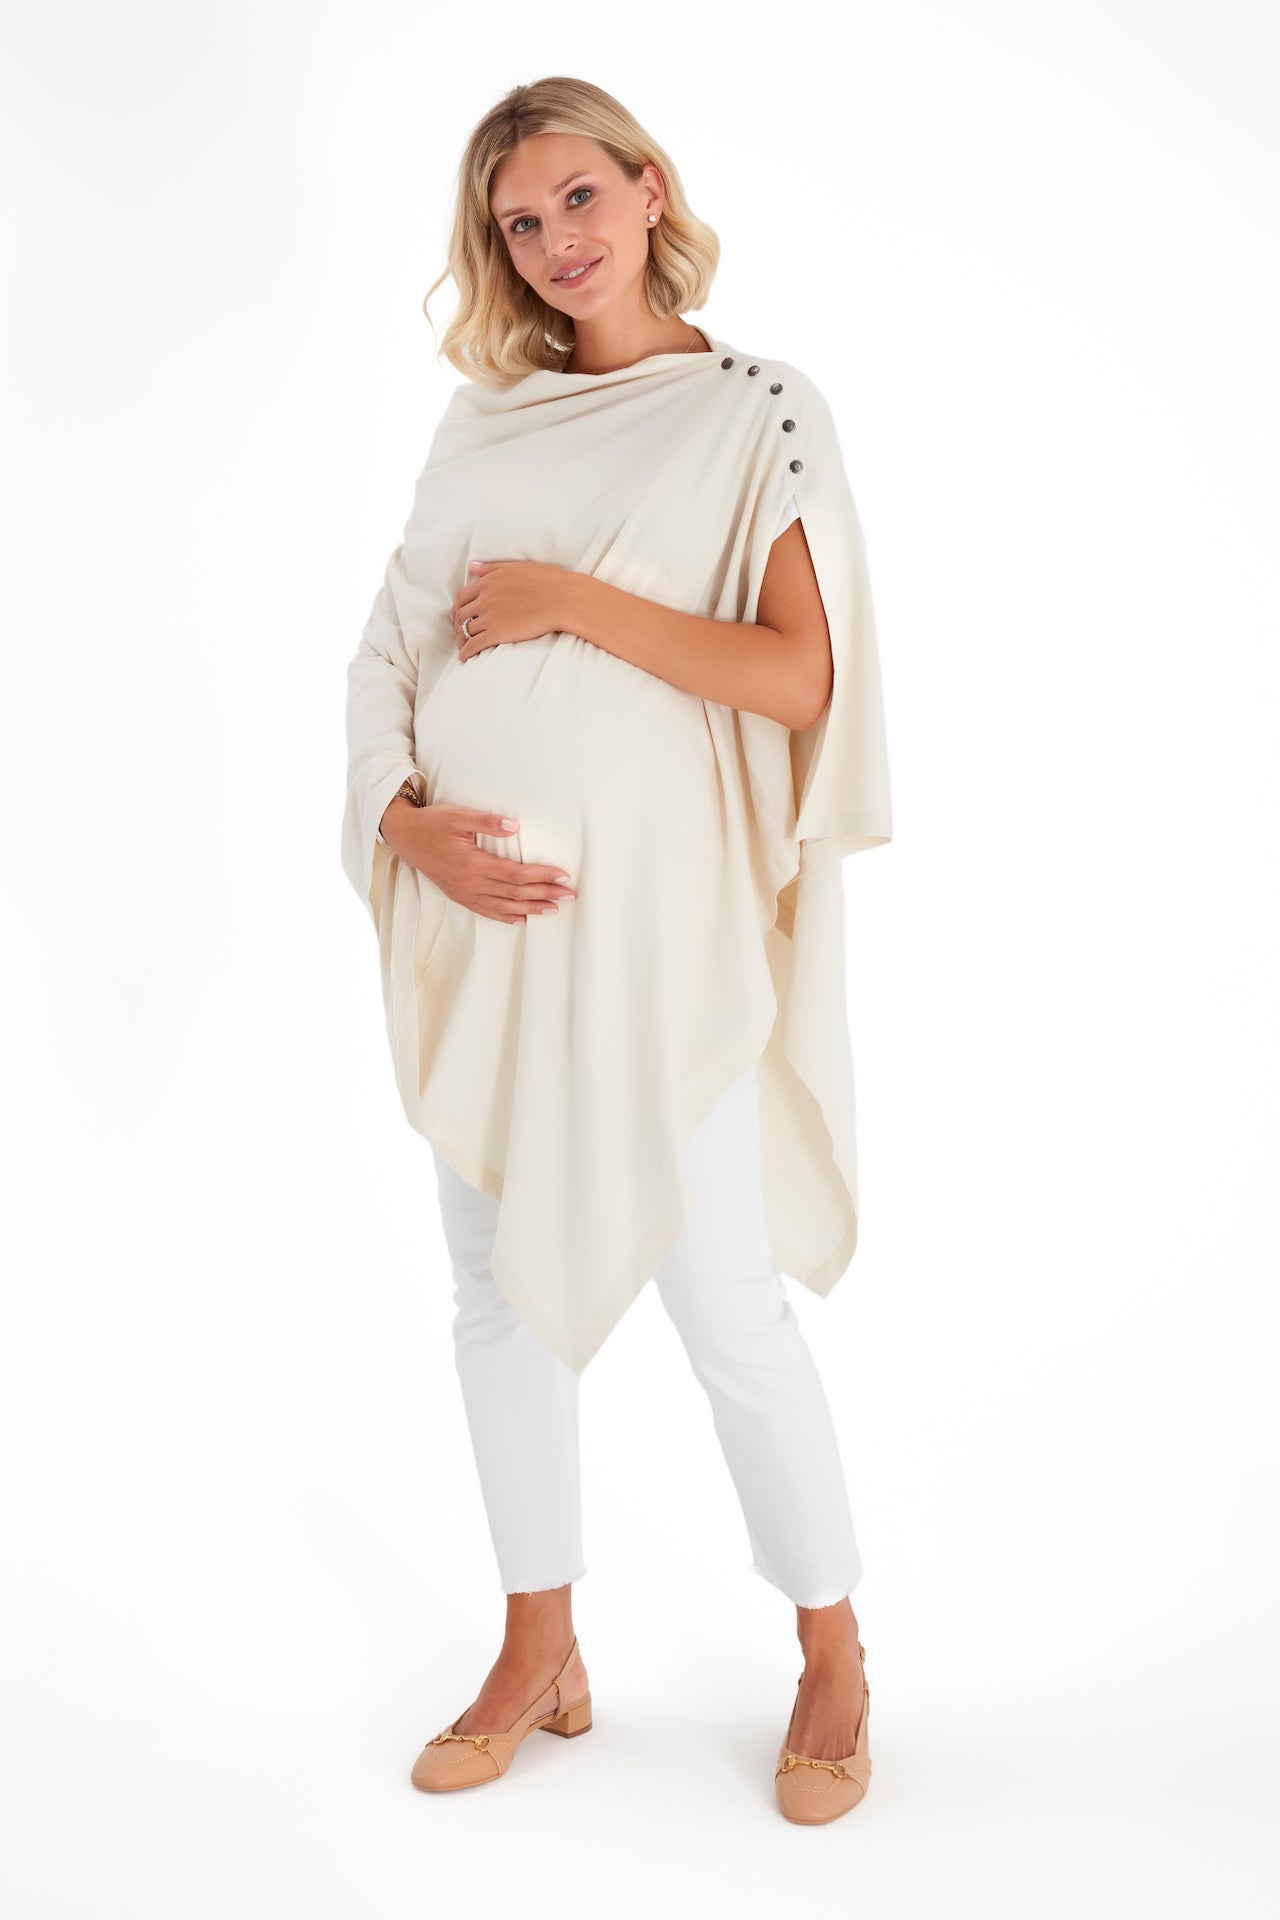 4in1 Multipurpose Supreme Cotton Cape as Maternity/Nursing Shawl